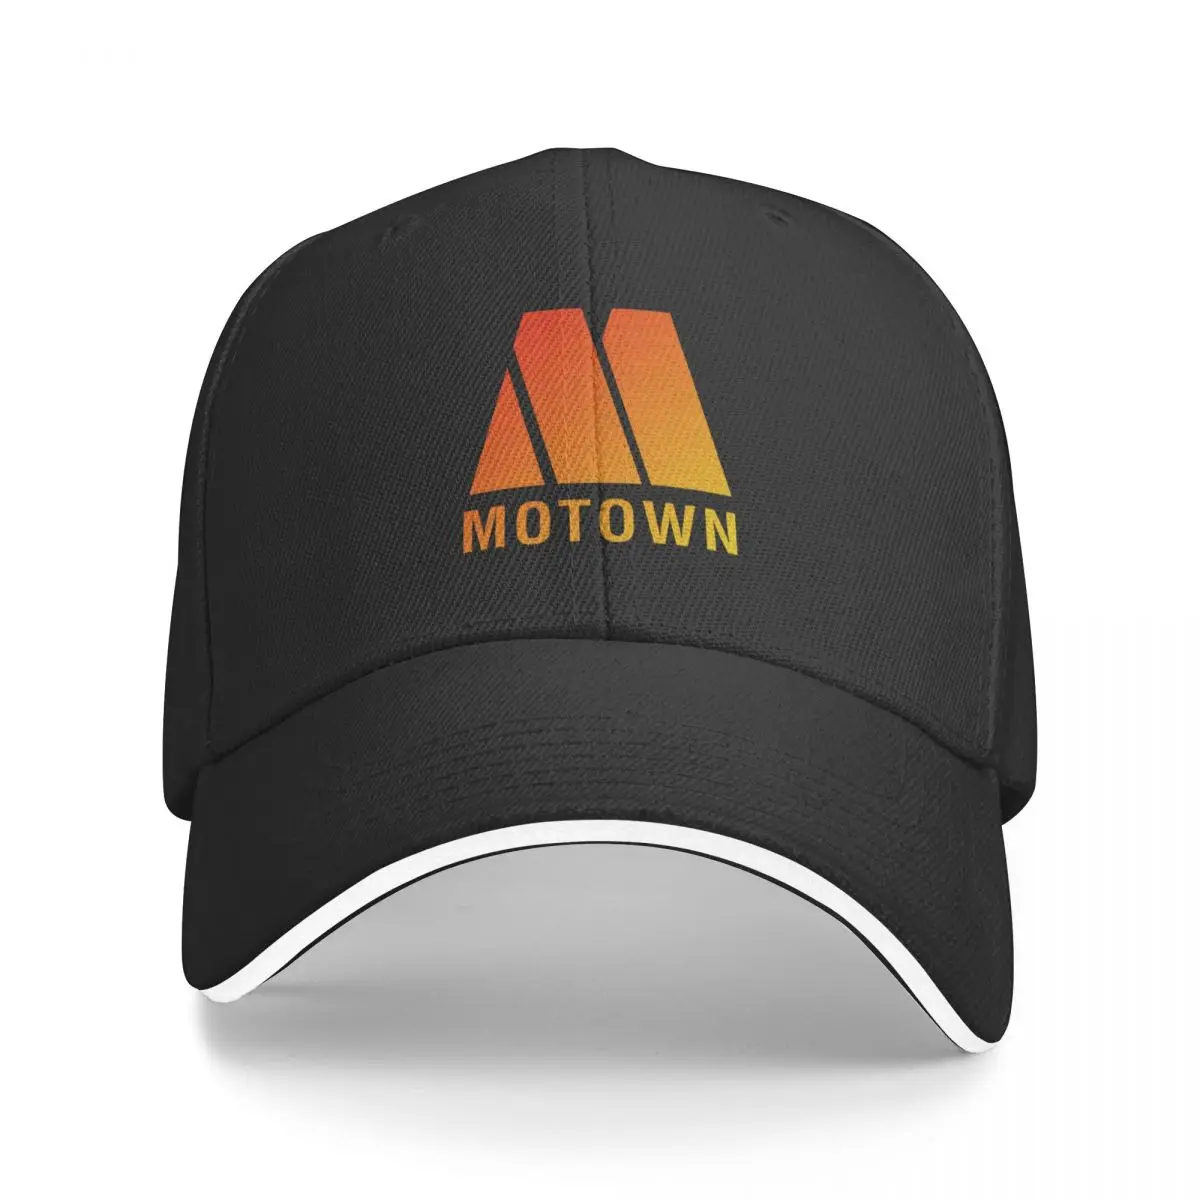 

Бейсболка с логотипом Motown, кепка для папы, роскошные брендовые кепки для женщин и мужчин